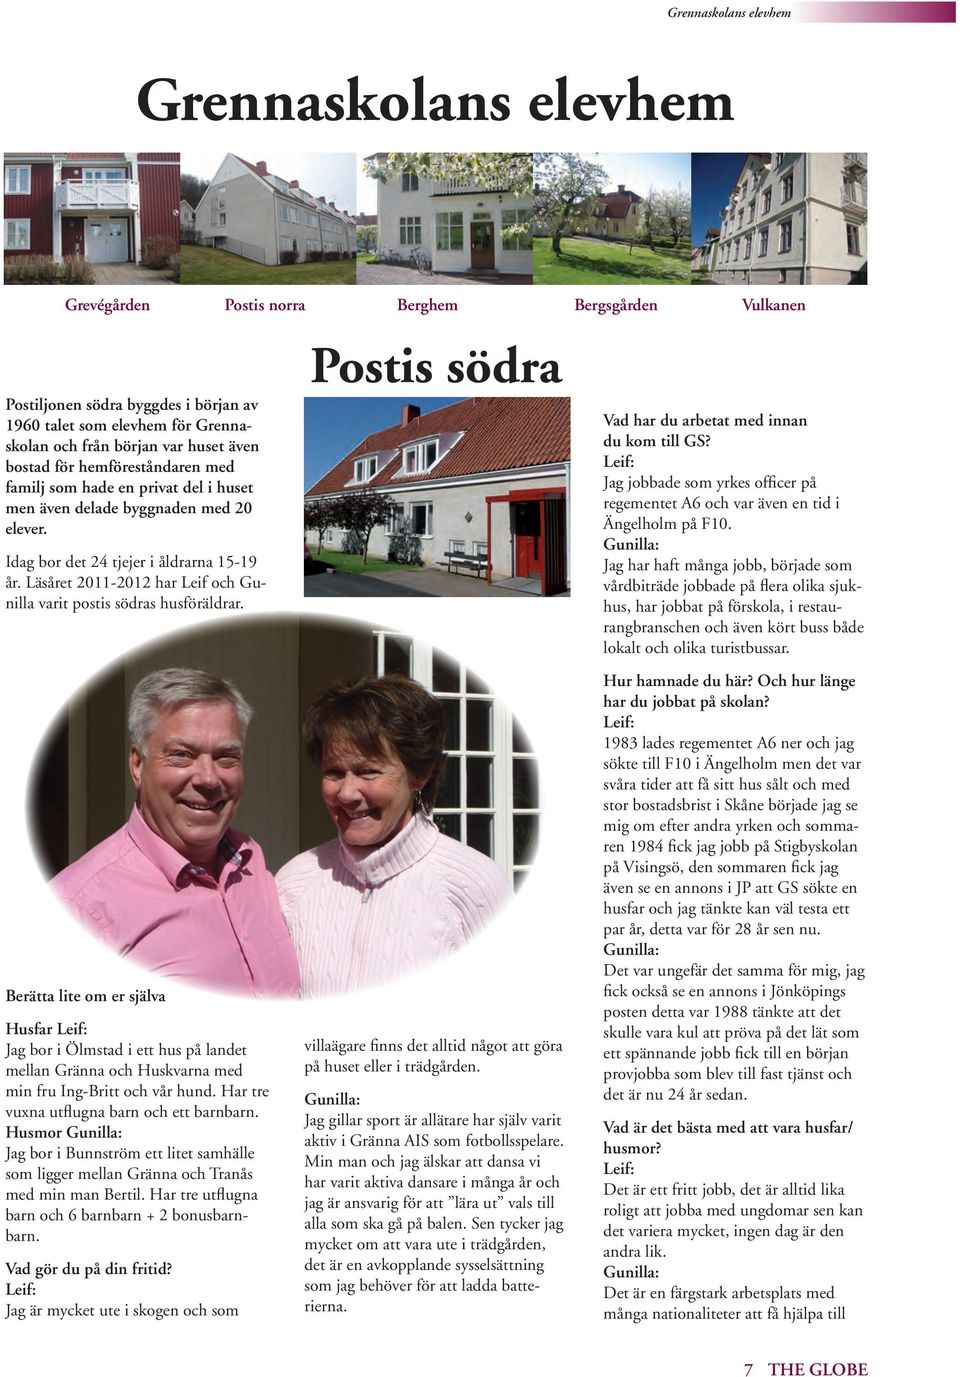 Läsåret 2011-2012 har Leif och Gunilla varit postis södras husföräldrar.